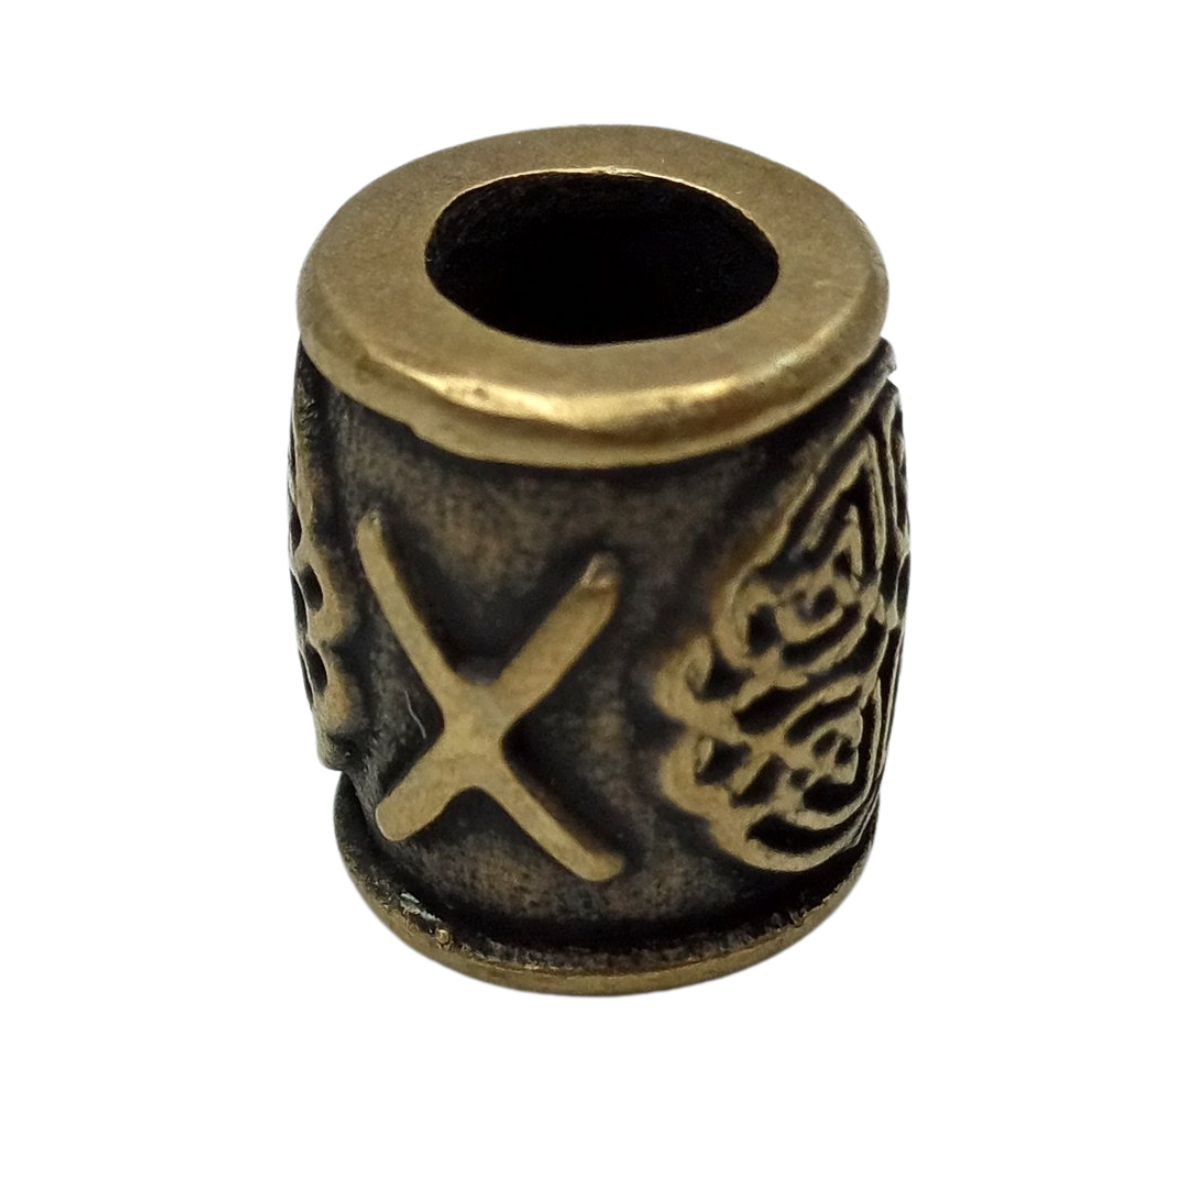 Gebo rune bronze bead   